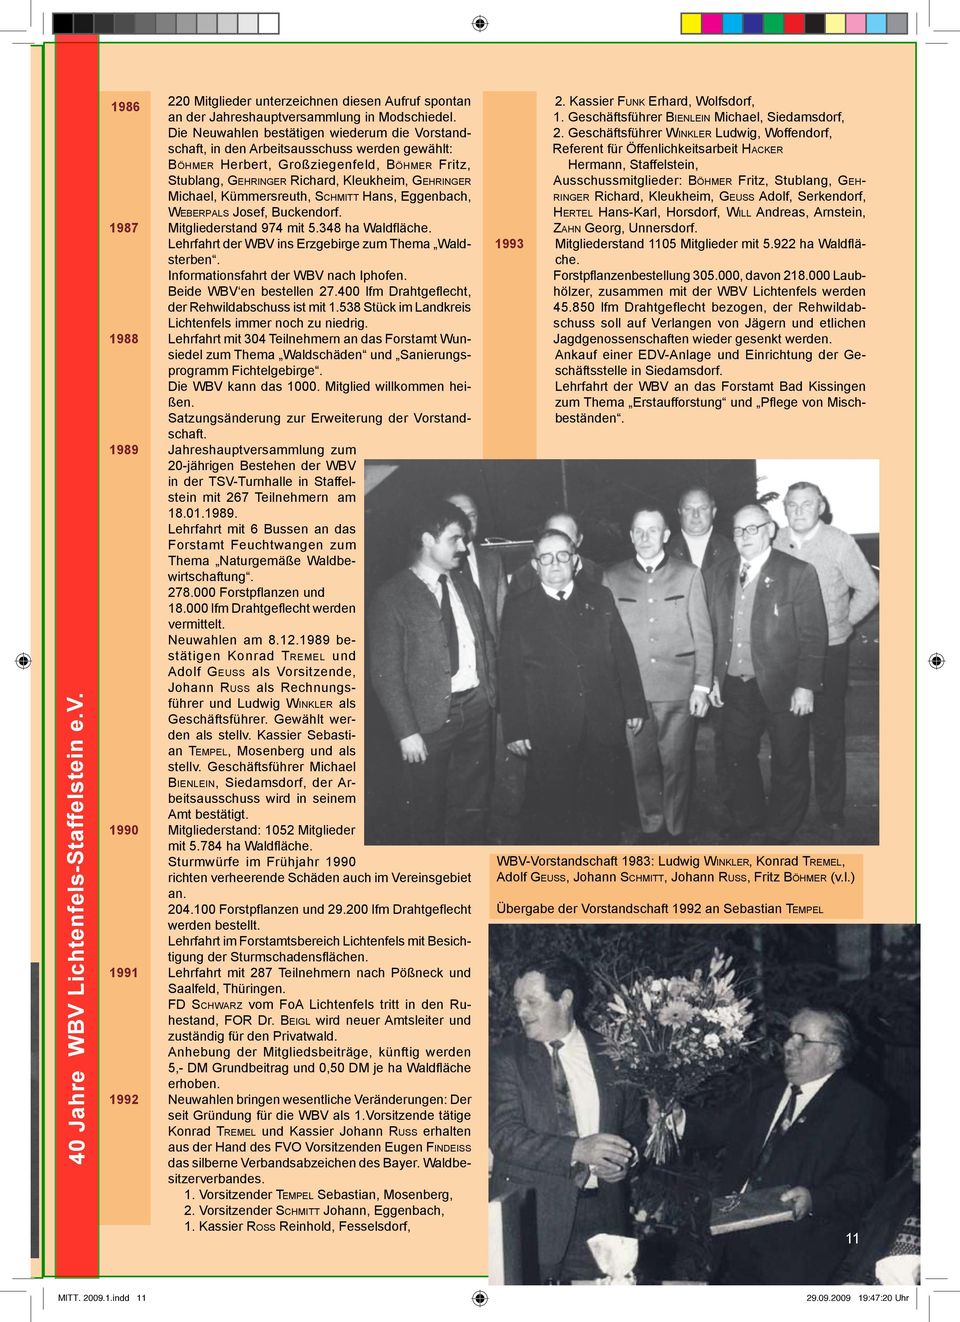 Kümmersreuth, Schmitt Hans, Eggenbach, Weberpals Josef, Buckendorf. 1987 Mitgliederstand 974 mit 5.348 ha Waldfläche. Lehrfahrt der WBV ins Erzgebirge zum Thema Waldsterben.